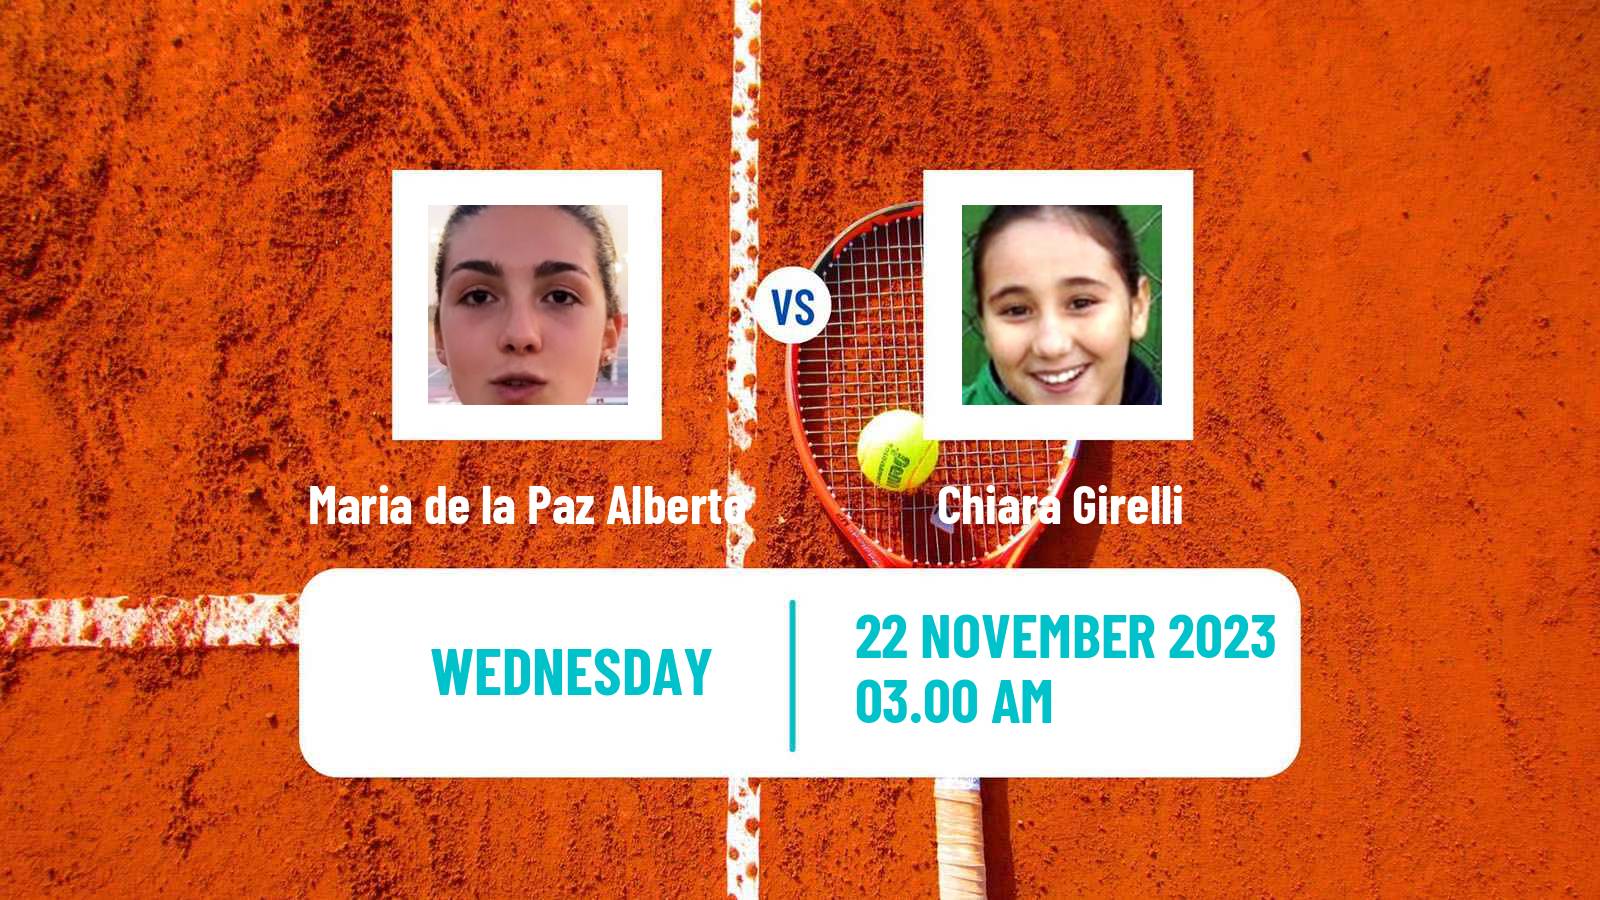 Tennis ITF W15 Alcala De Henares Women Maria de la Paz Alberto - Chiara Girelli